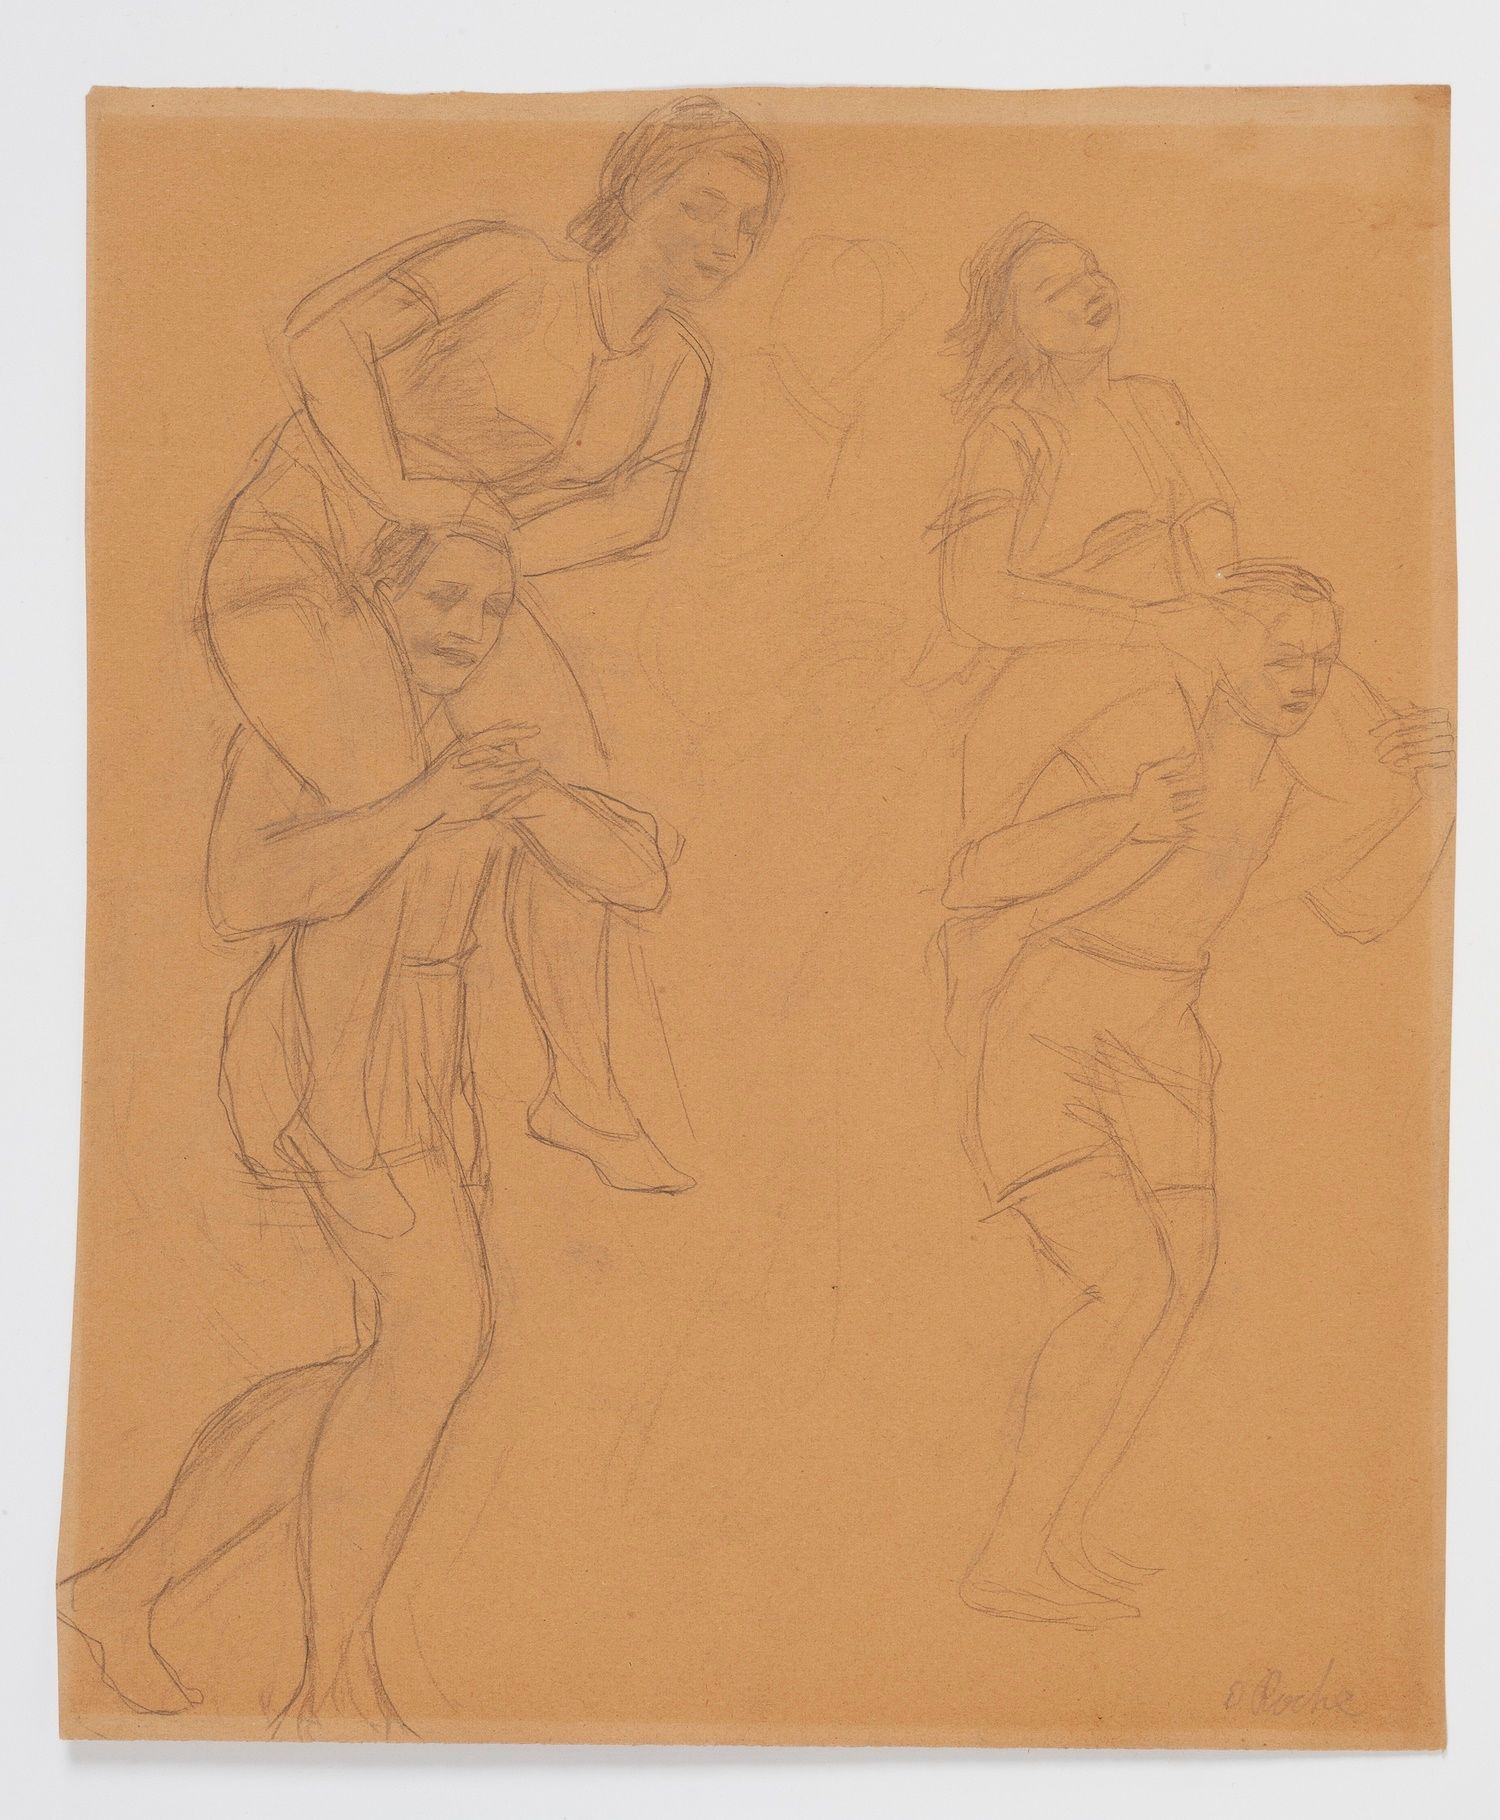 Null Odilon ROCHE (1868-1947) 

Estudio del cuerpo

Lápiz sobre papel marrón, fi&hellip;